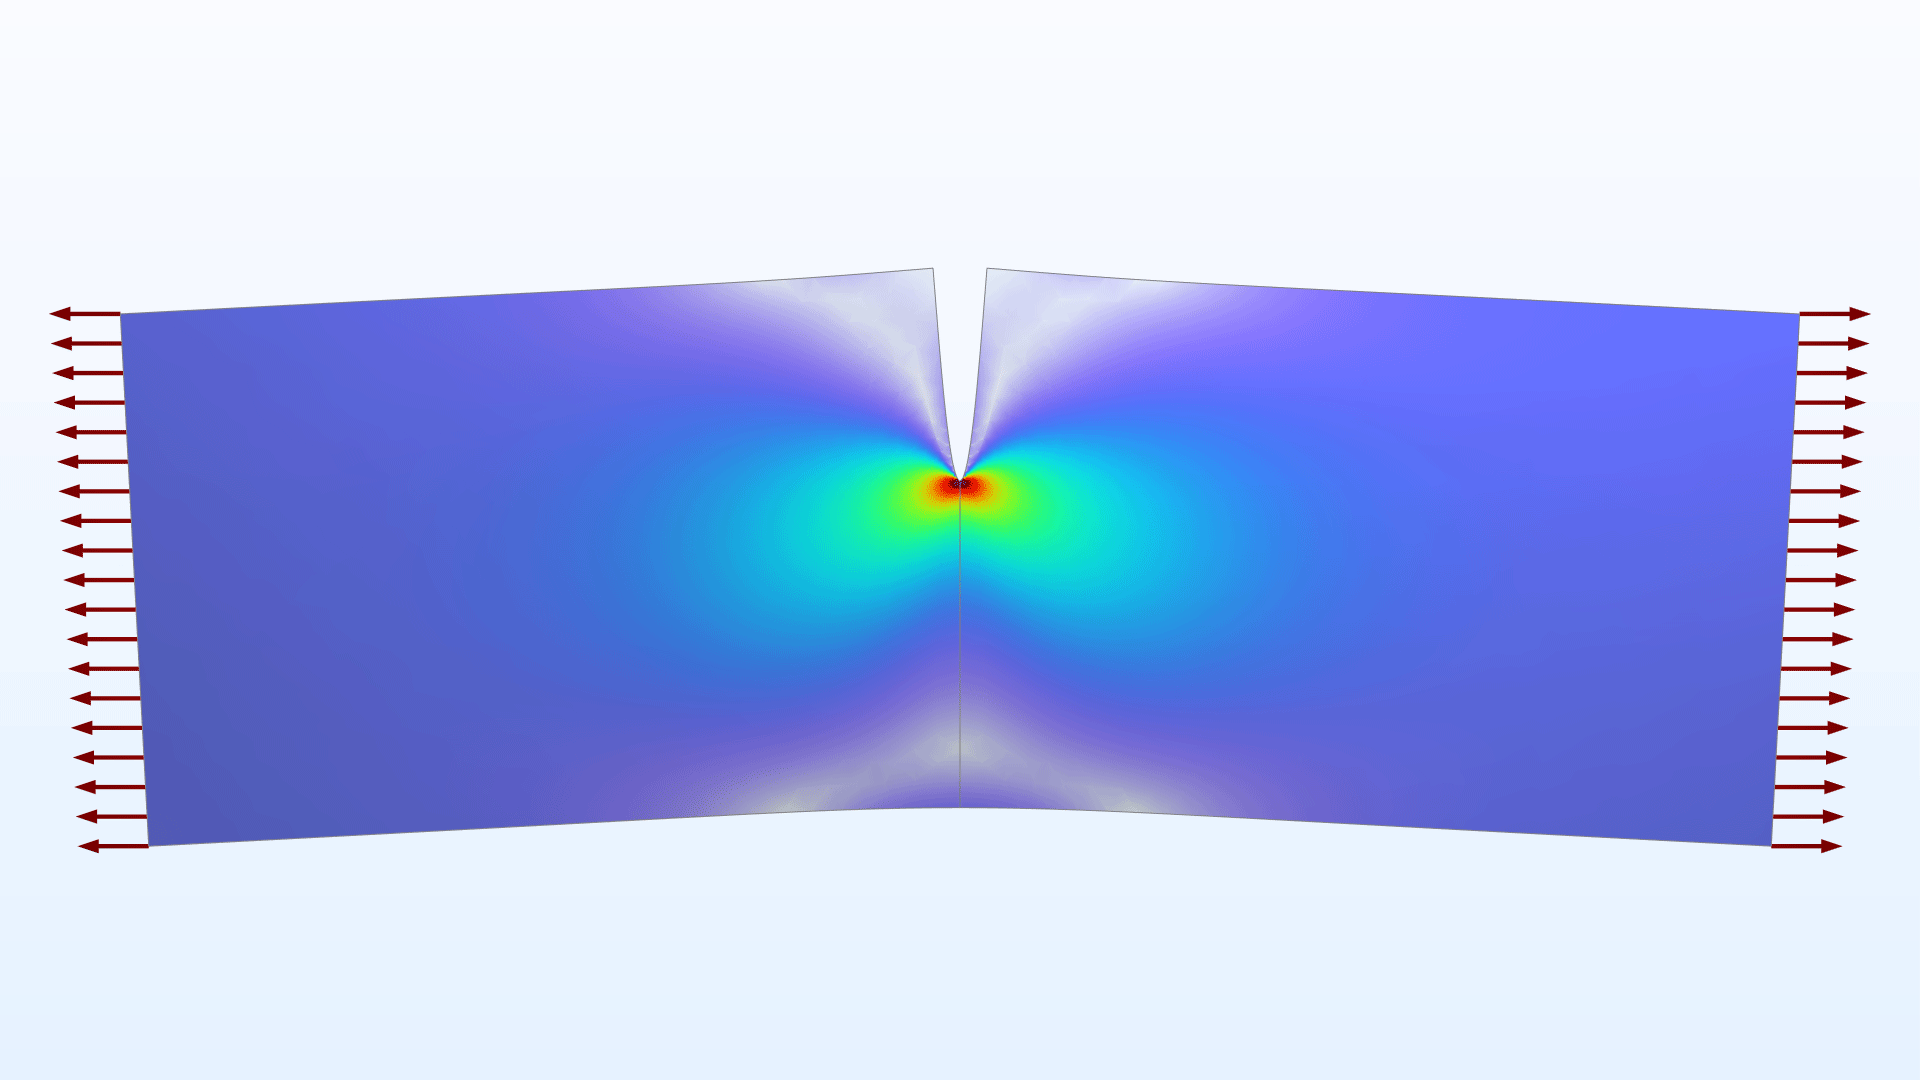 以 Prism 颜色表显示裂纹应力的模型。